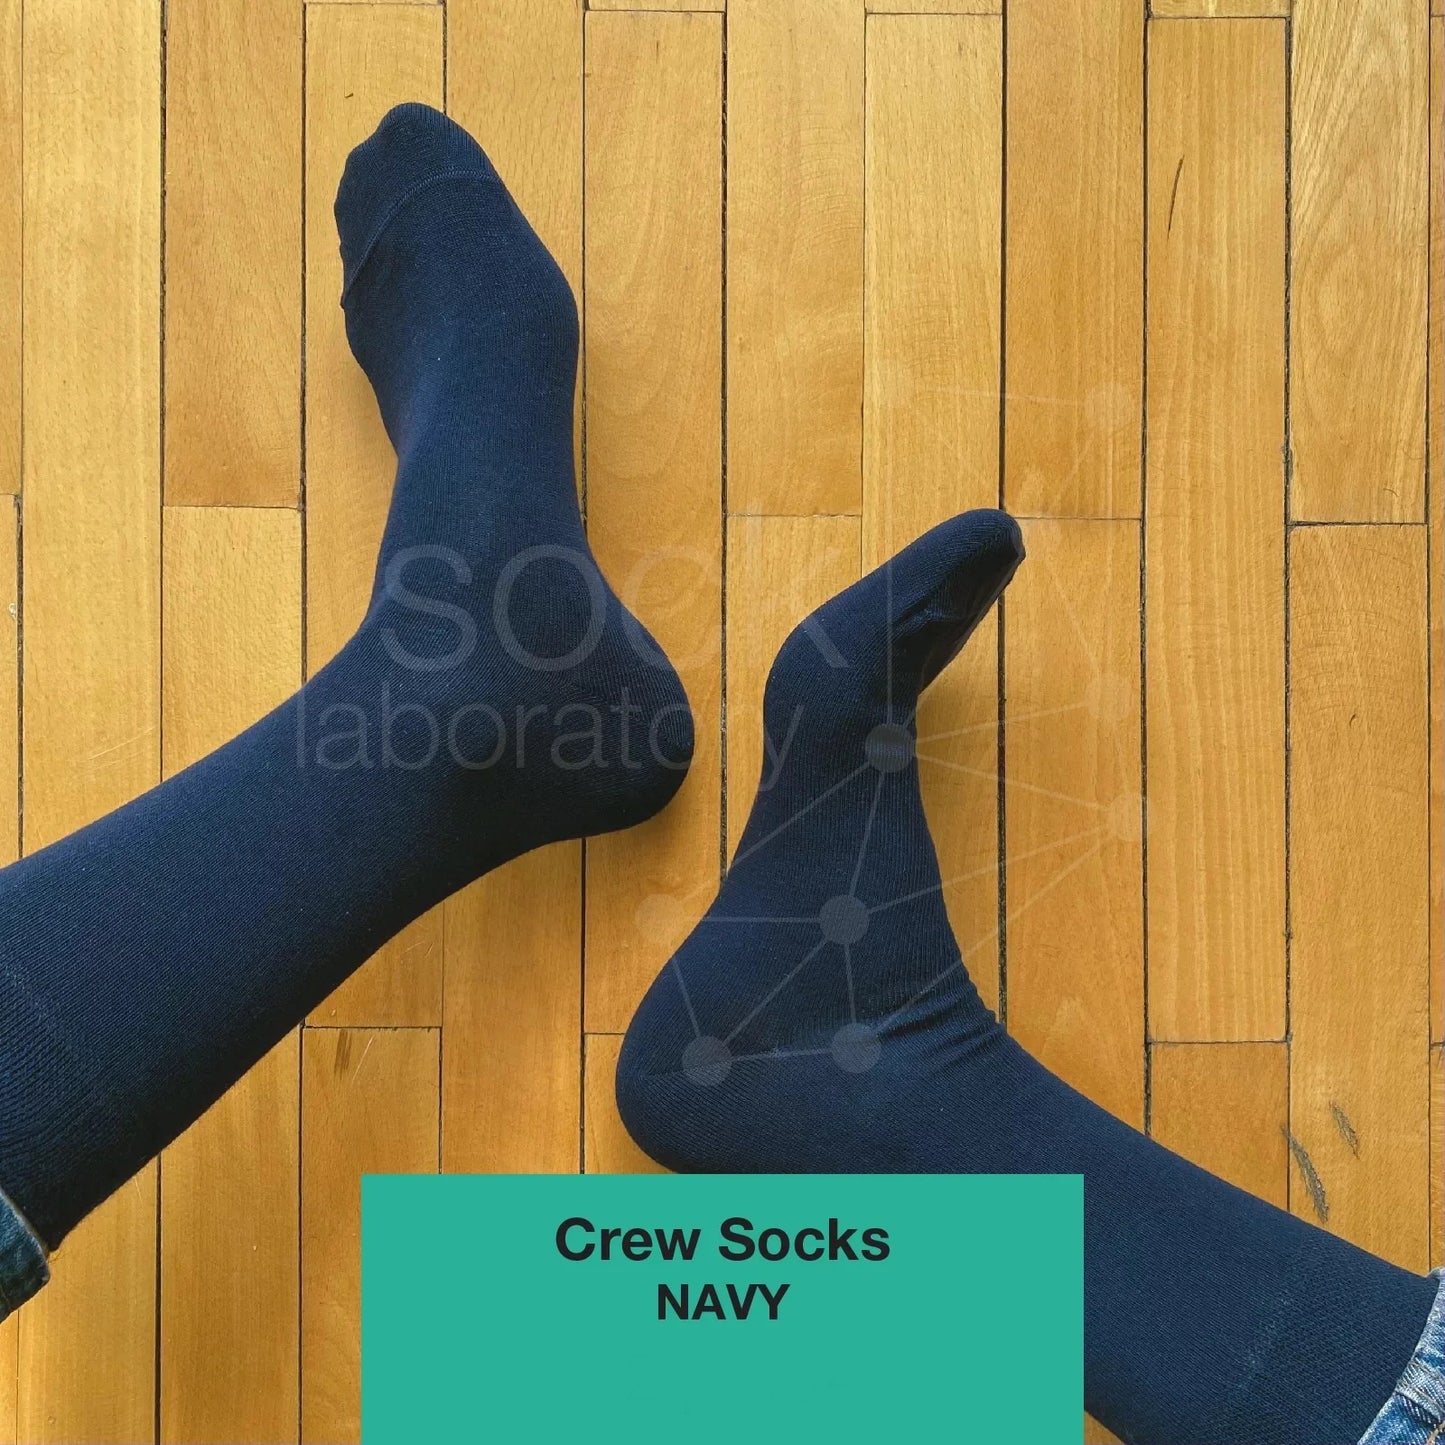 CREW SOCKS - Set of 3 / Black / Navy / Brown